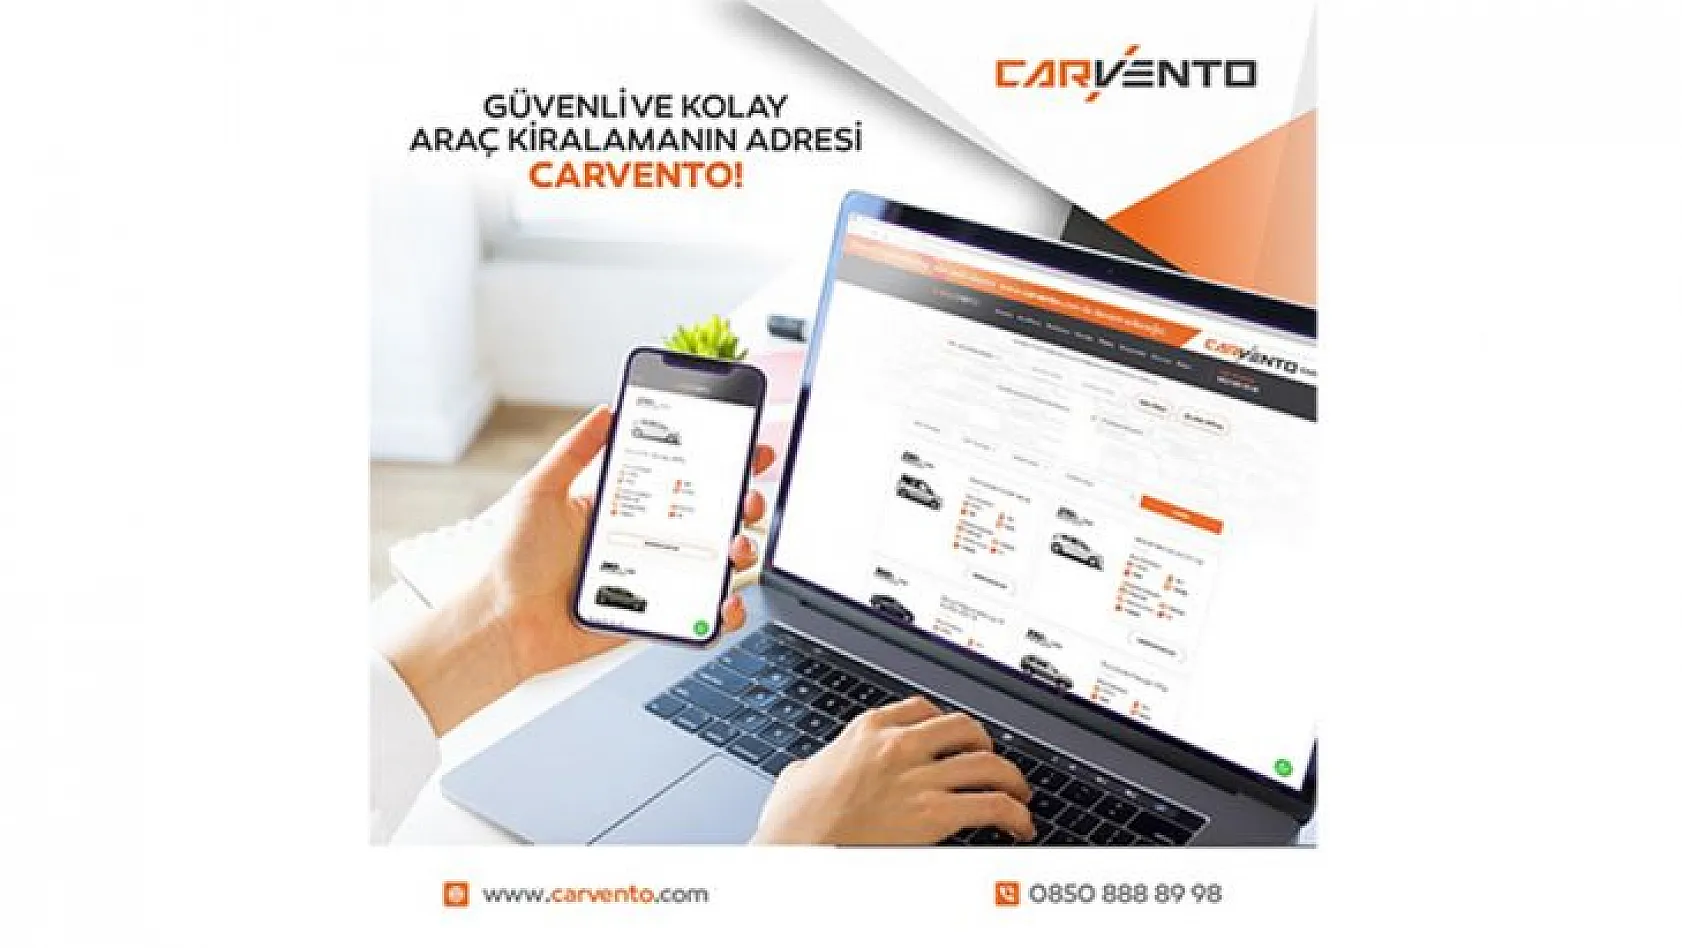 Ticari İşletmeler İçin En Avantajlı Çözümler Carvento'da